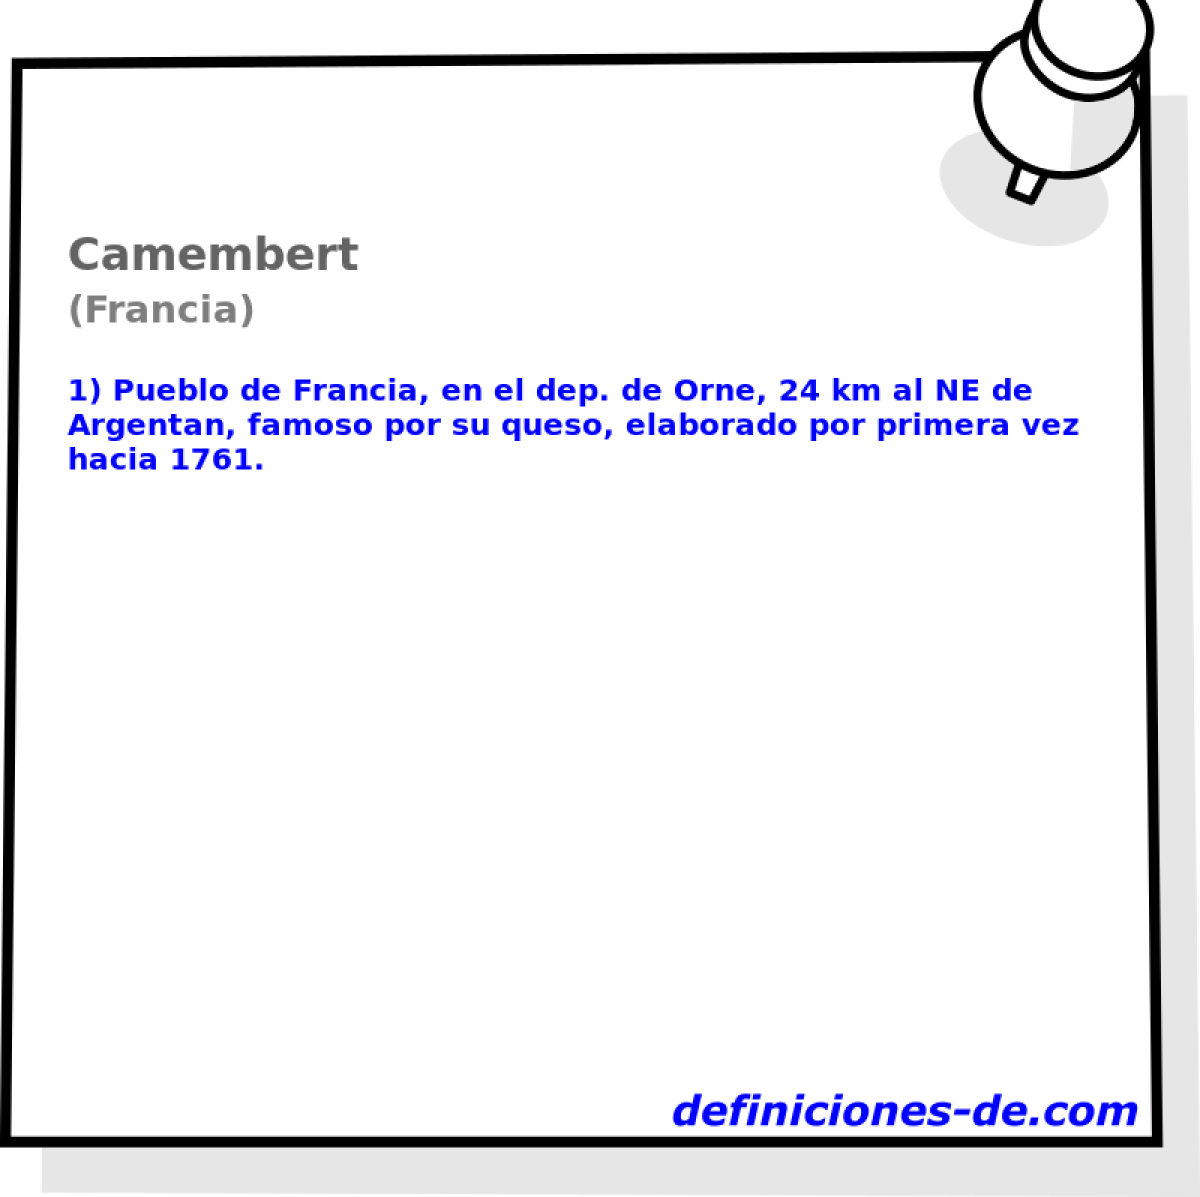 Camembert (Francia)